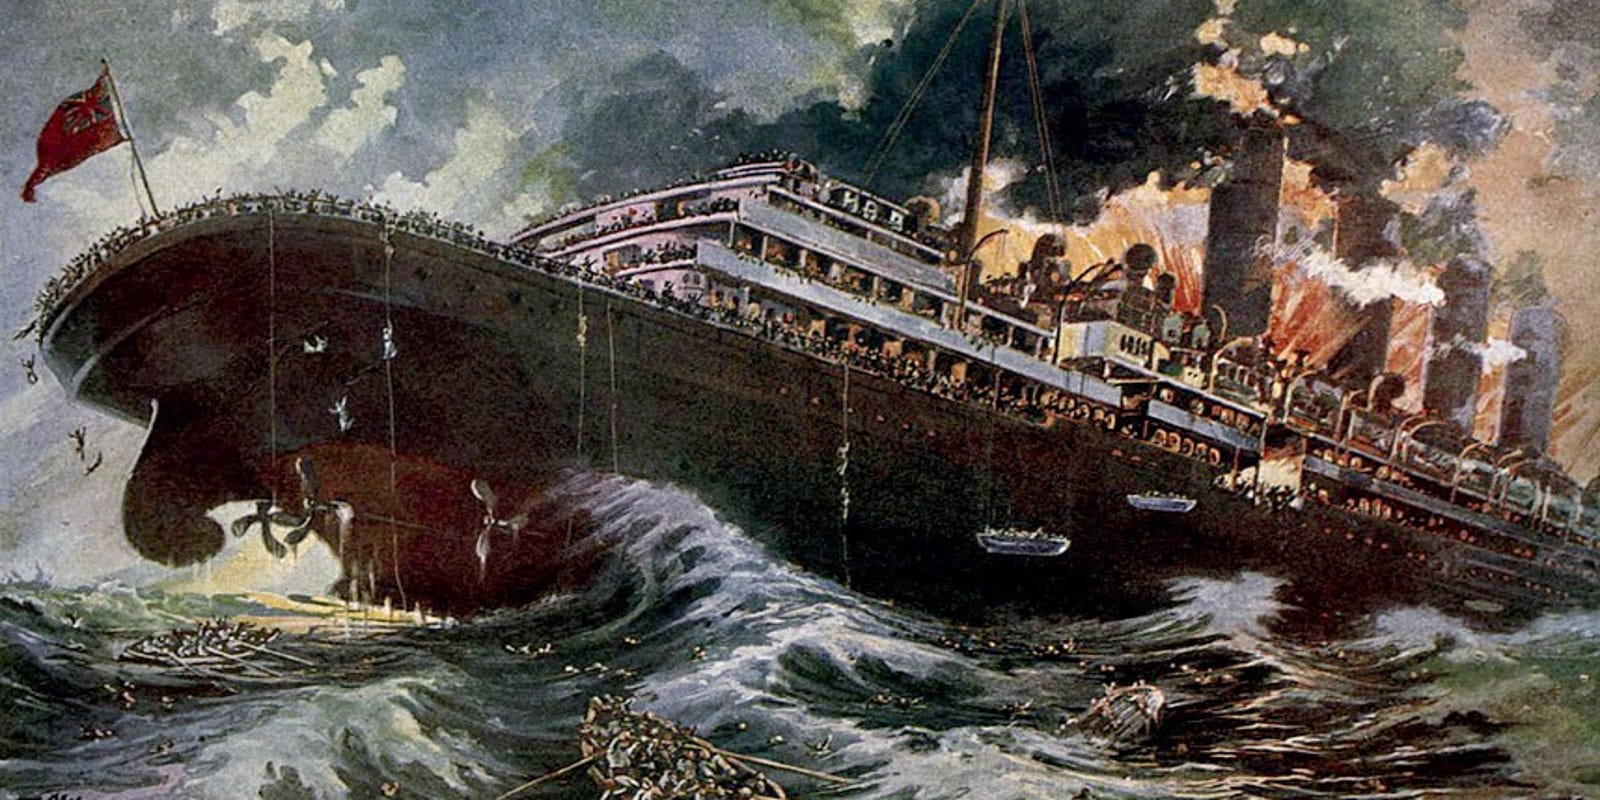 Seattle Author Investigates The Lusitania Sinking